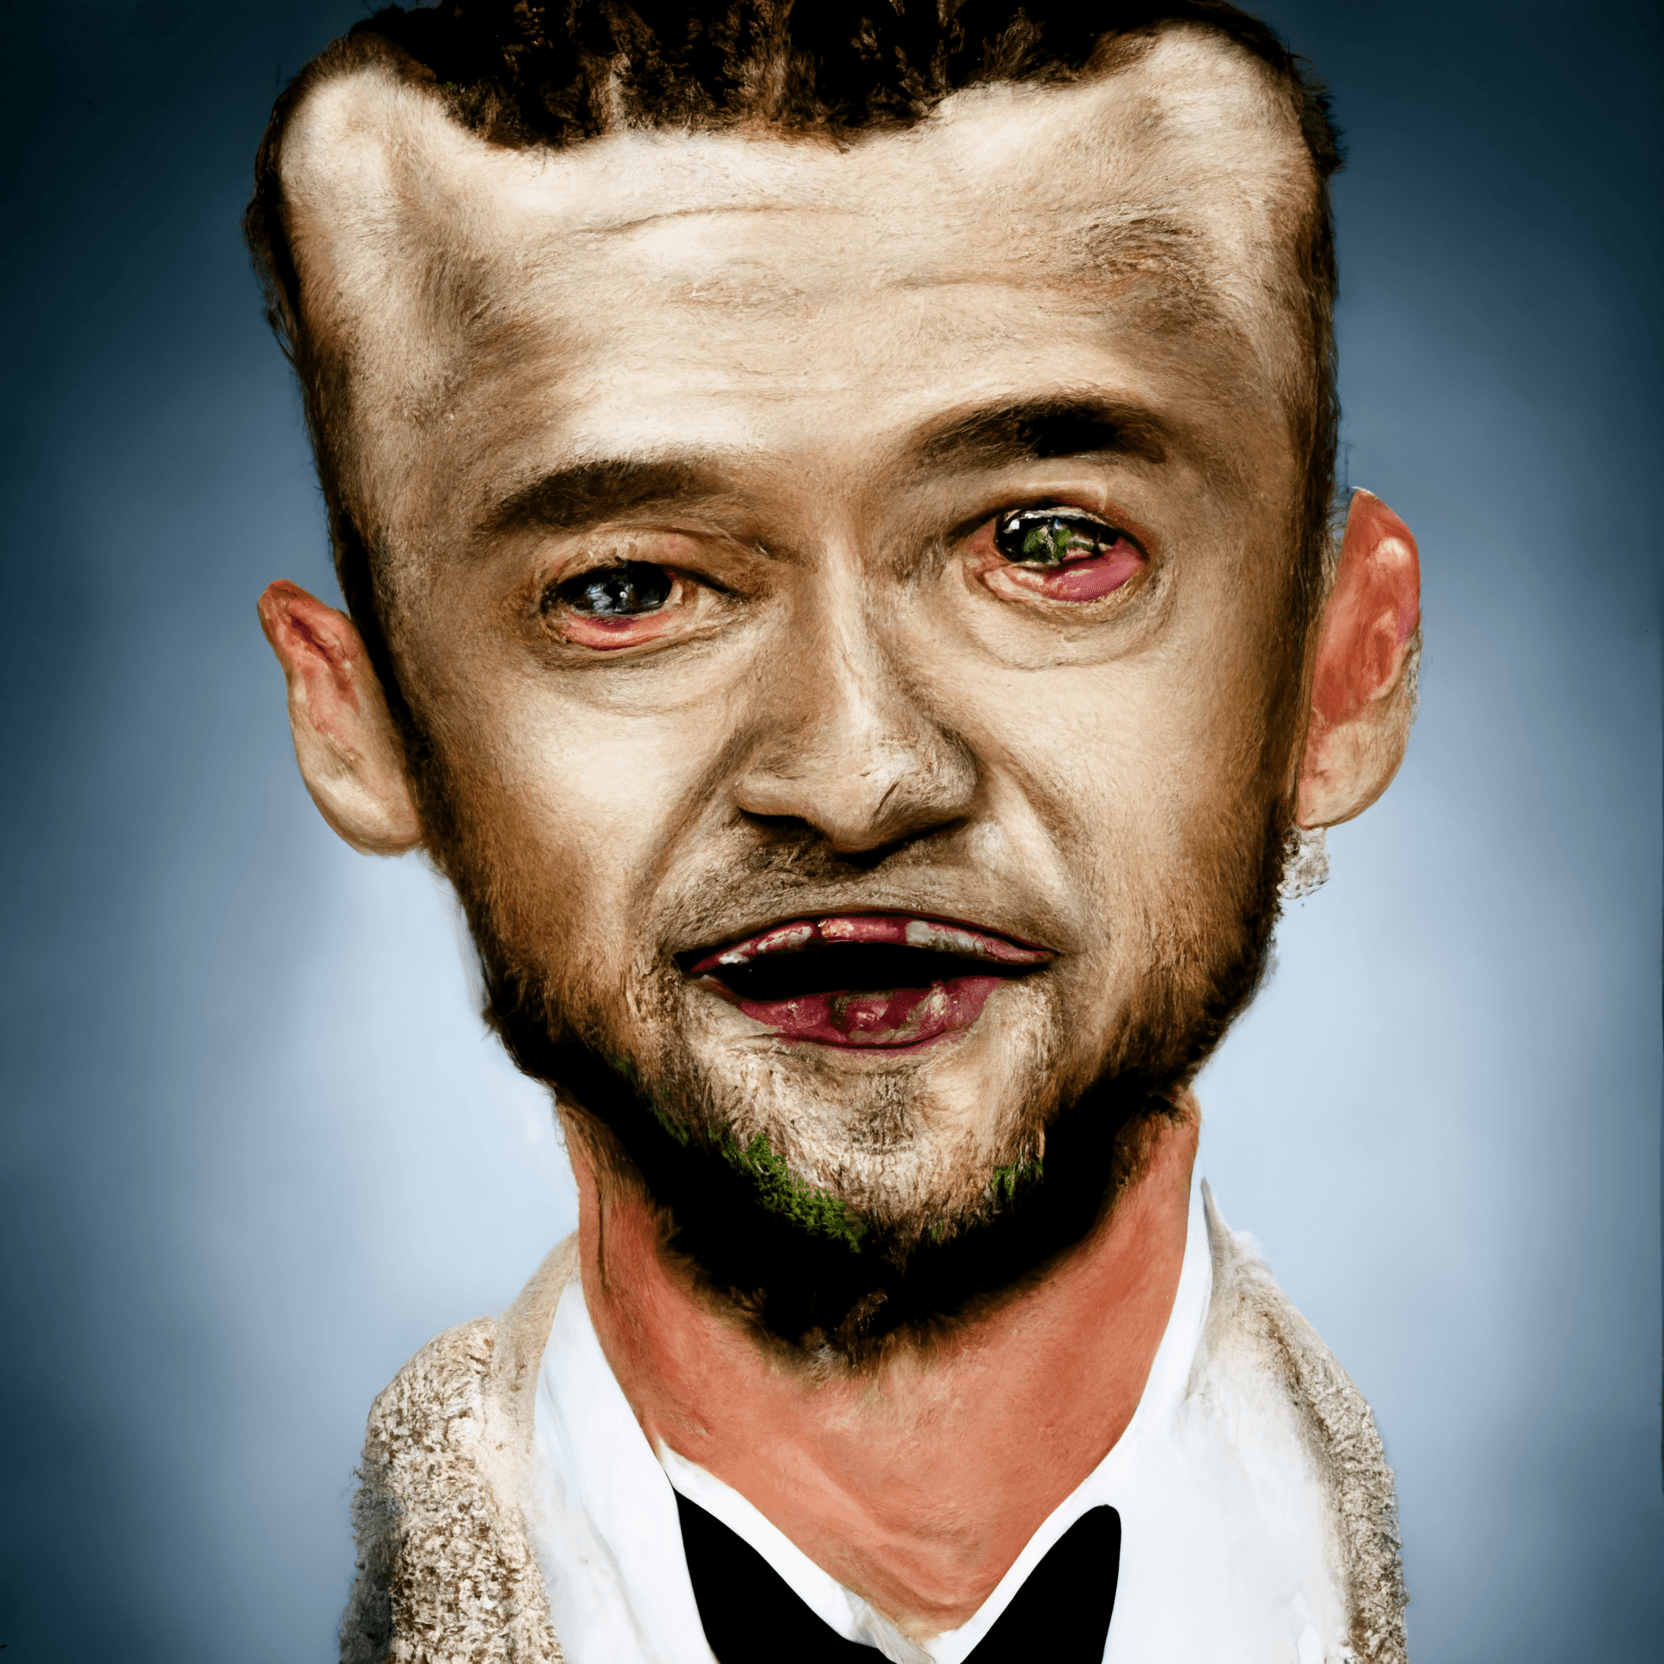 Justin Timberlake on Crack